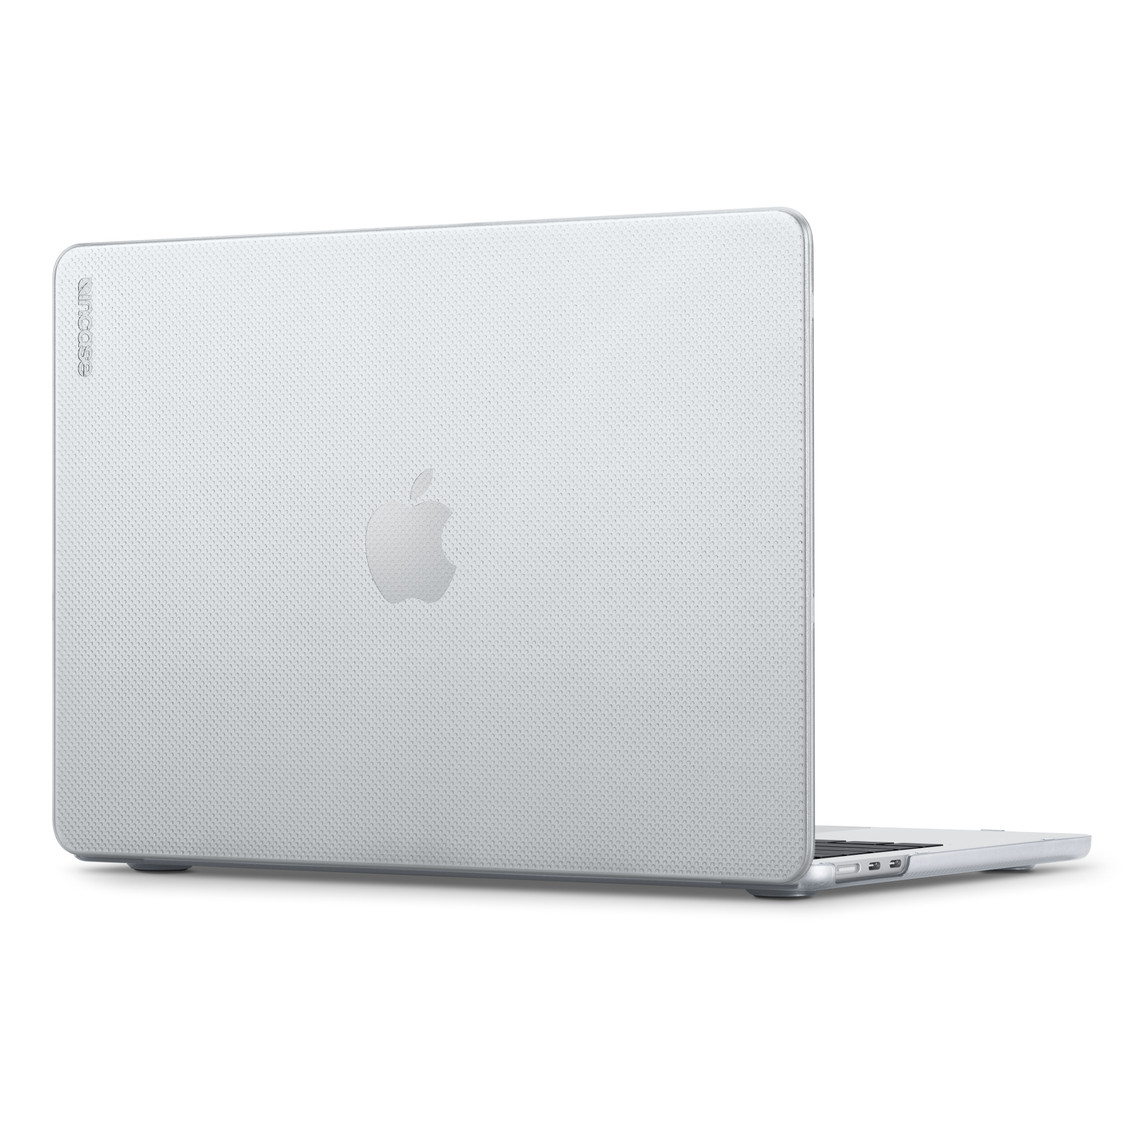 Vue oblique arrière de la coque Hardshell d’Incase pour MacBook Air, qui offre une protection légère et ergonomique sans entraver l’accès aux ports, voyants et boutons.